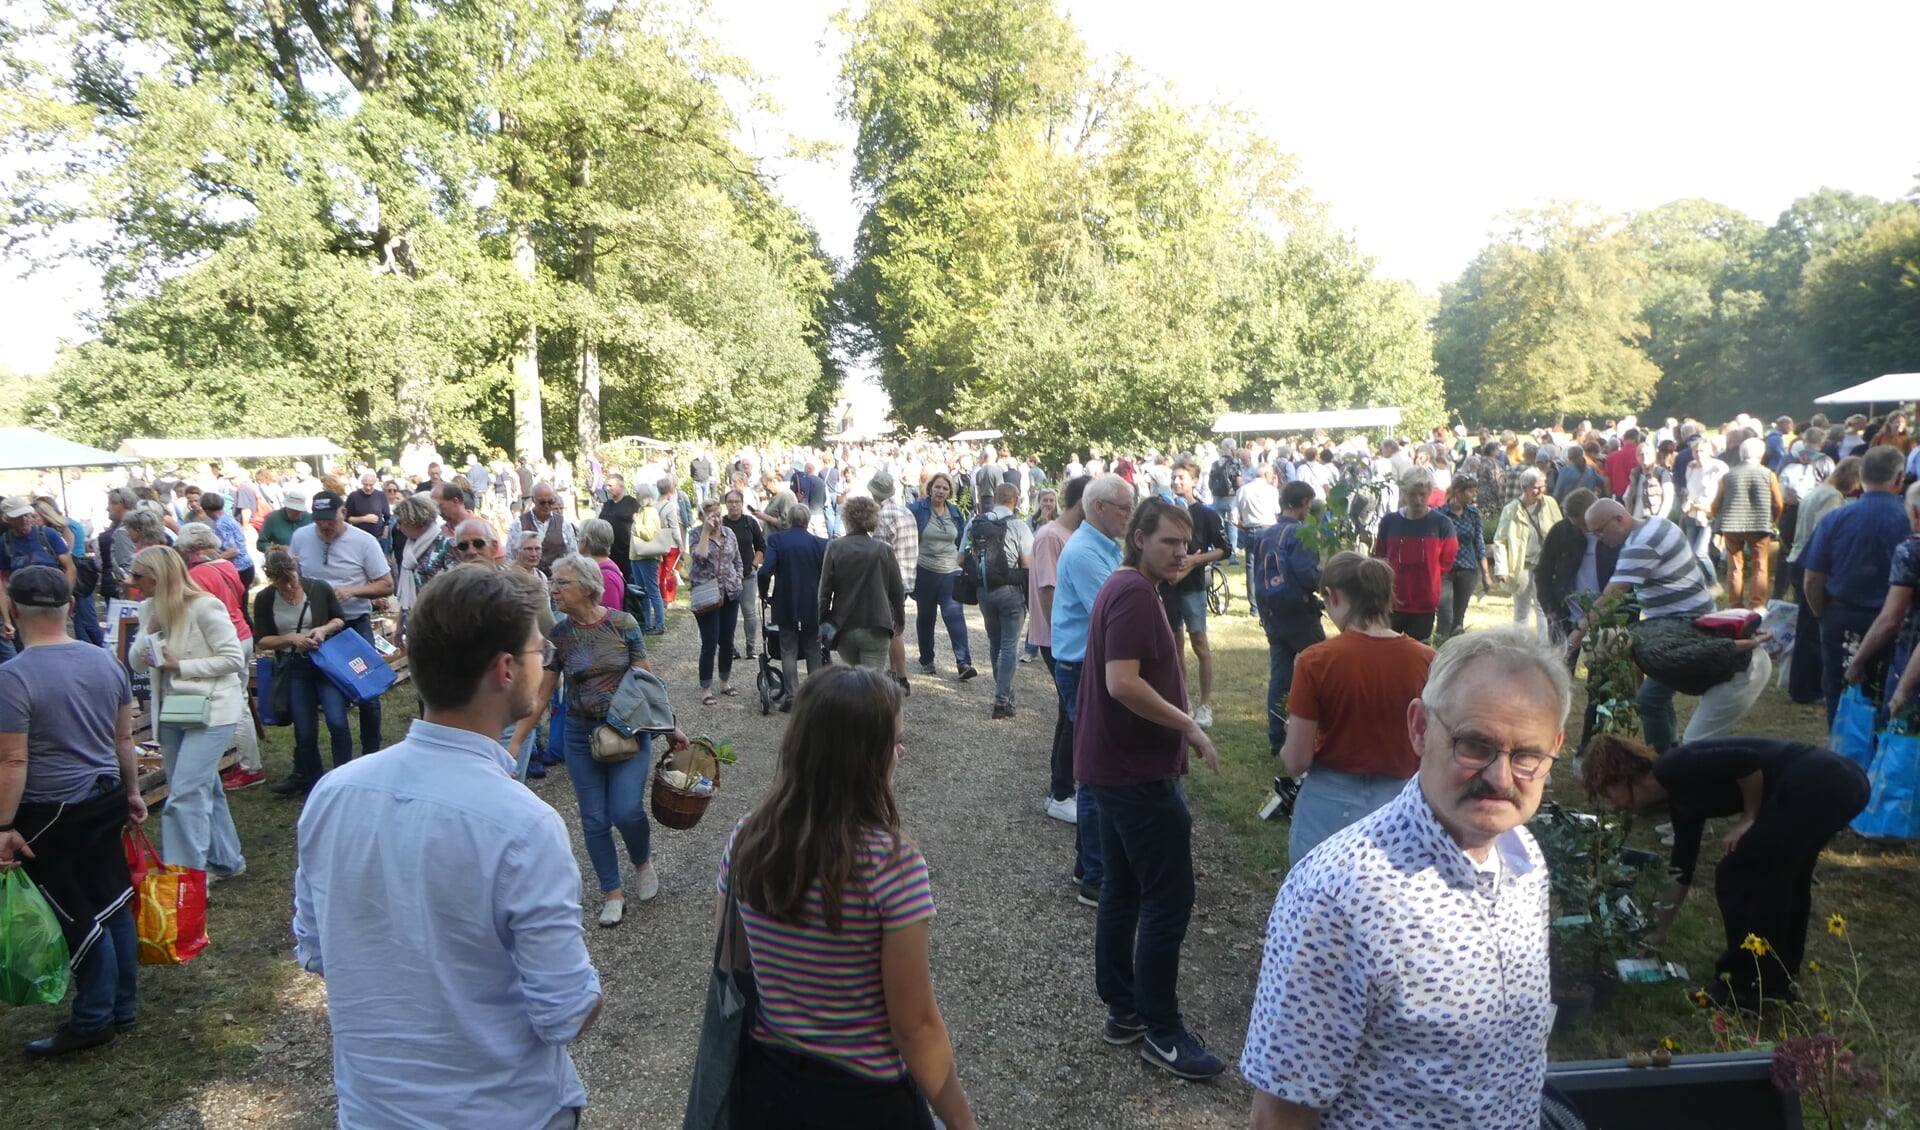 Rond de 6500 bezoekers bezochten zondag de Ambachtelijke Plantenmarkt op Landgoed De Wiersse. Foto: Jan Hendriksen